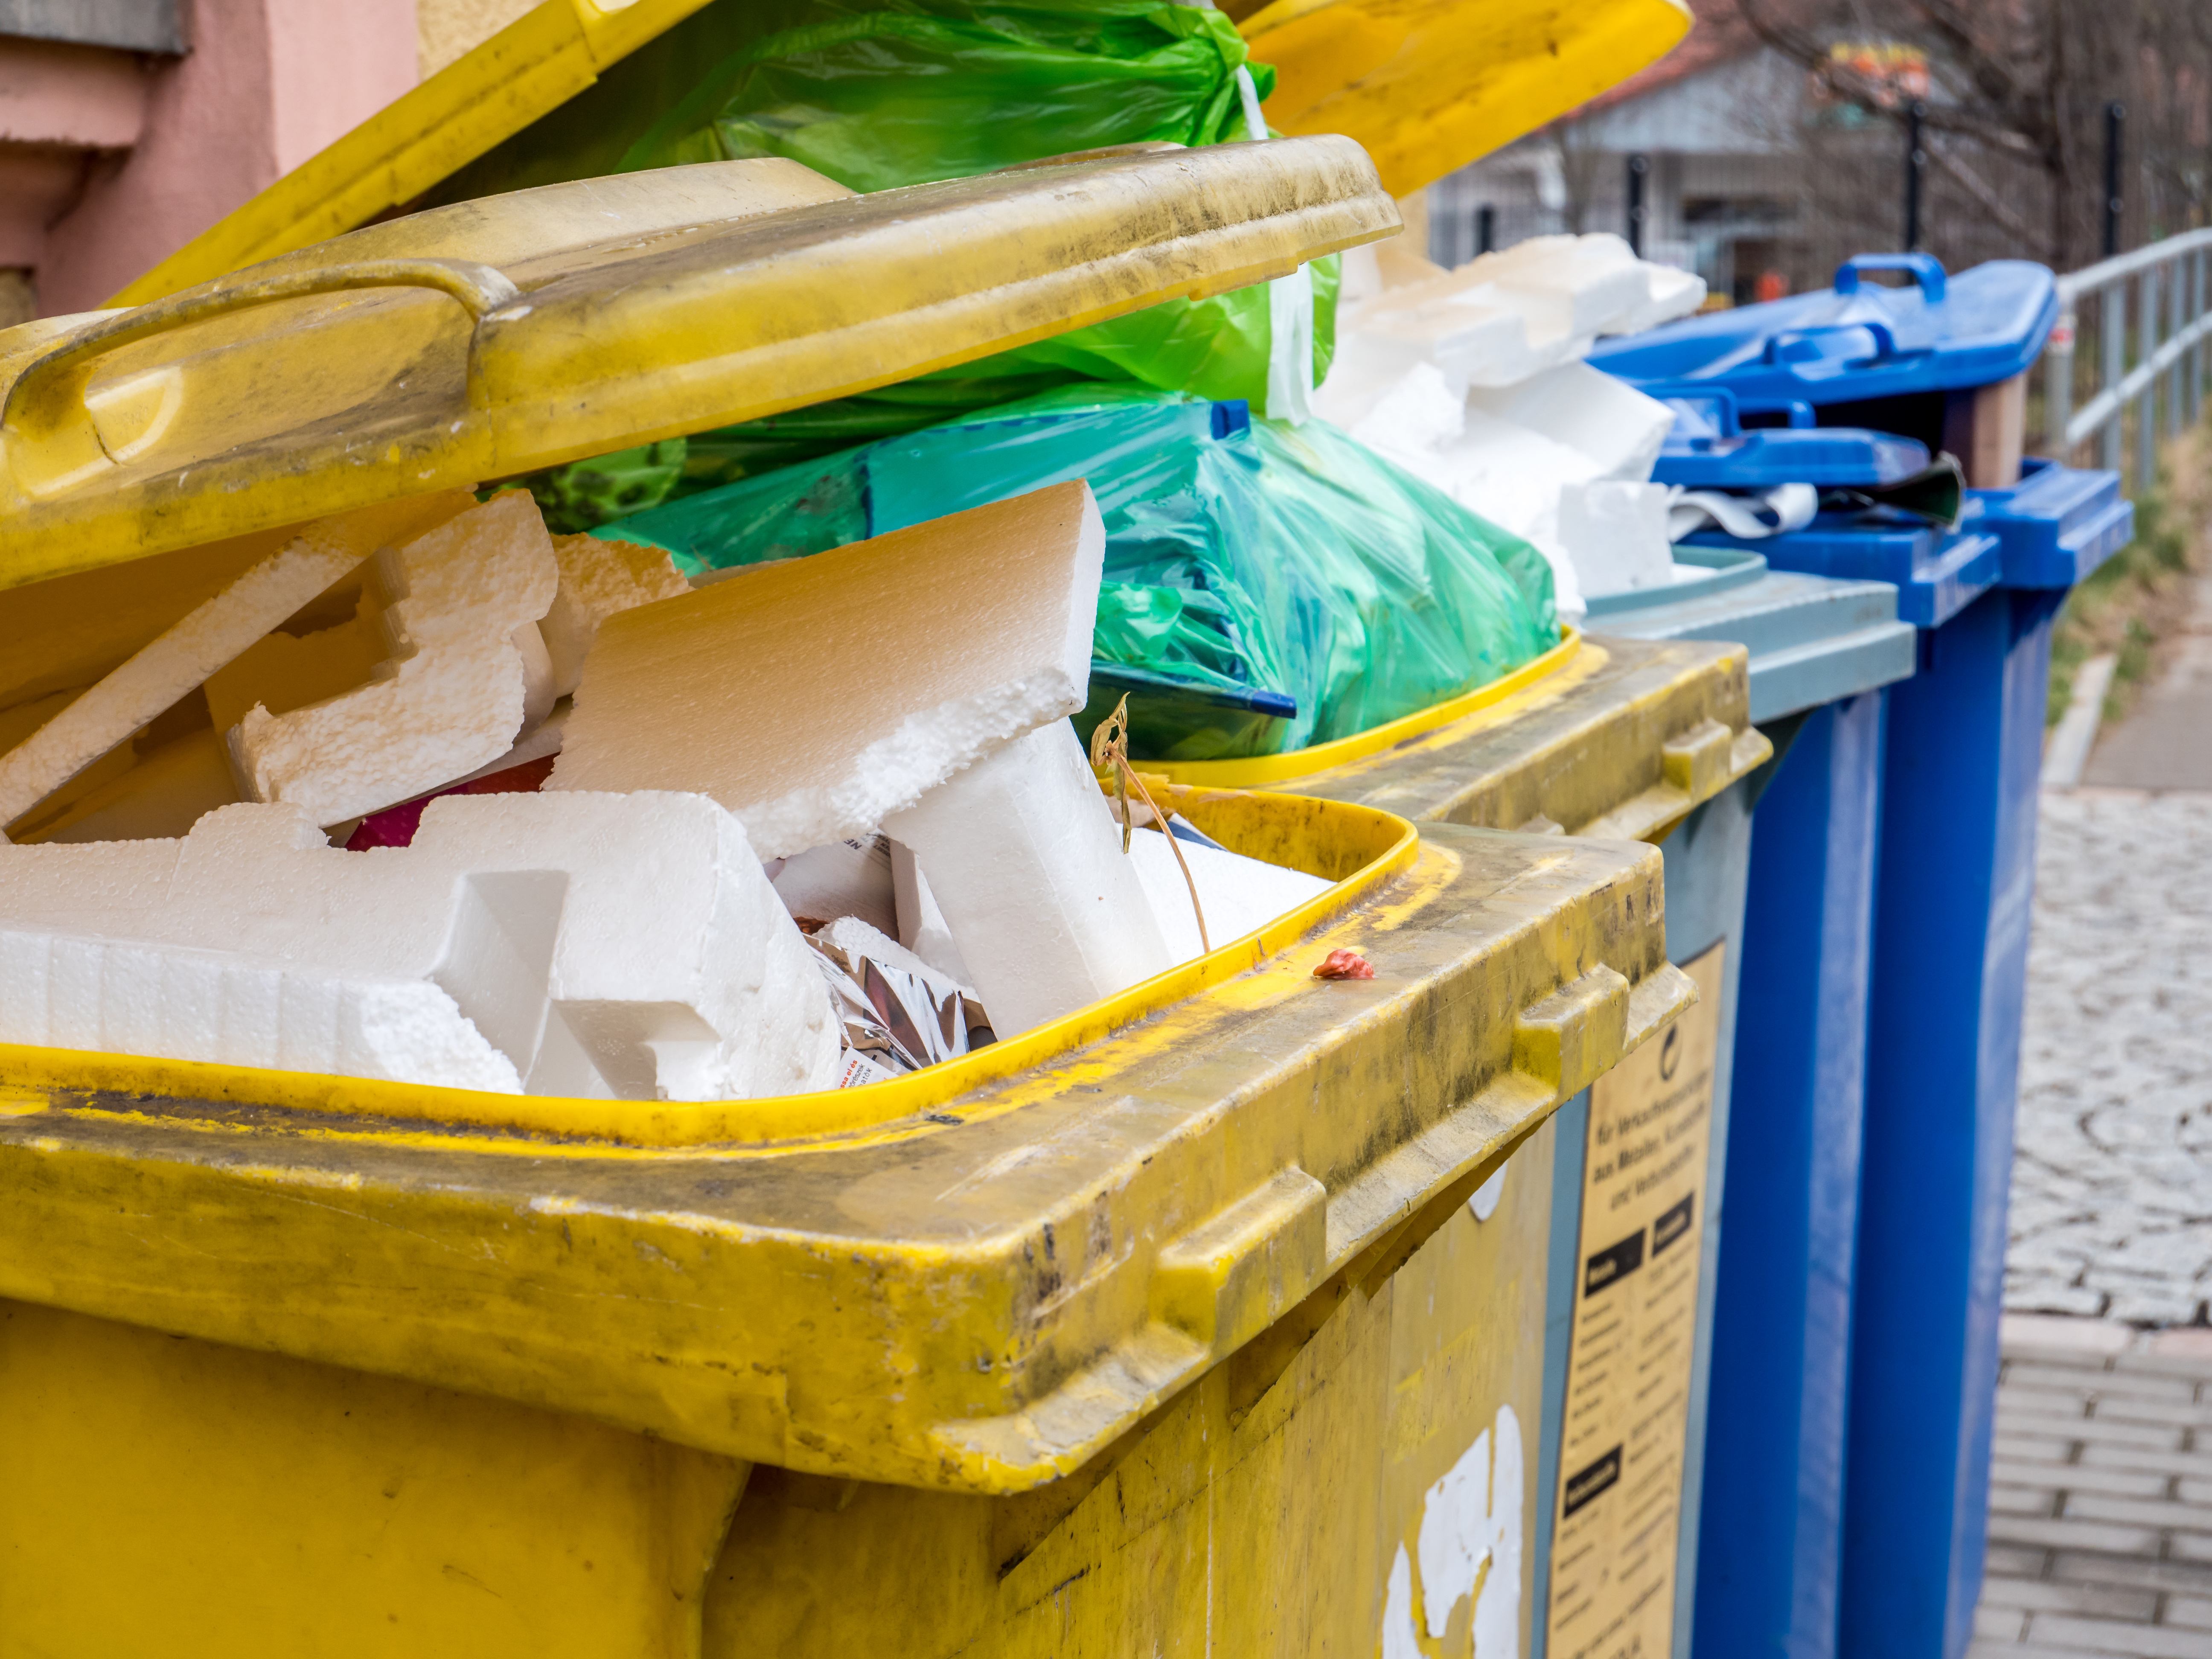 Das Bild zeigt gelbe und blaue Mülltonnen, die mit Plastik- und Styroporabfällen gefüllt sind.